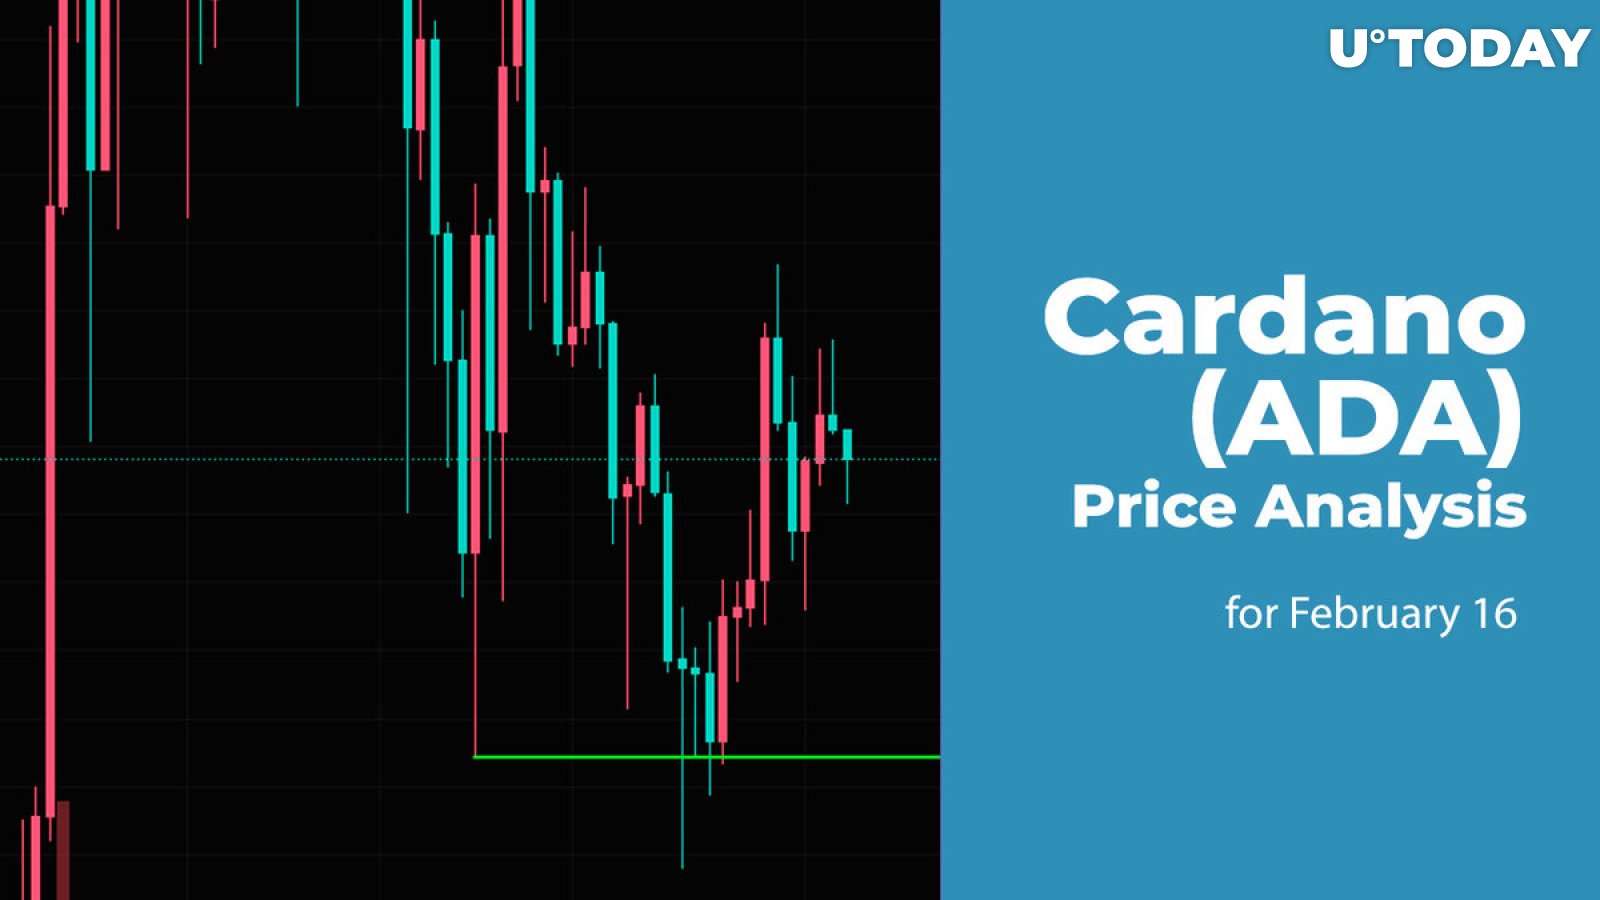 Cardano (ADA) Price Prediction for February 16